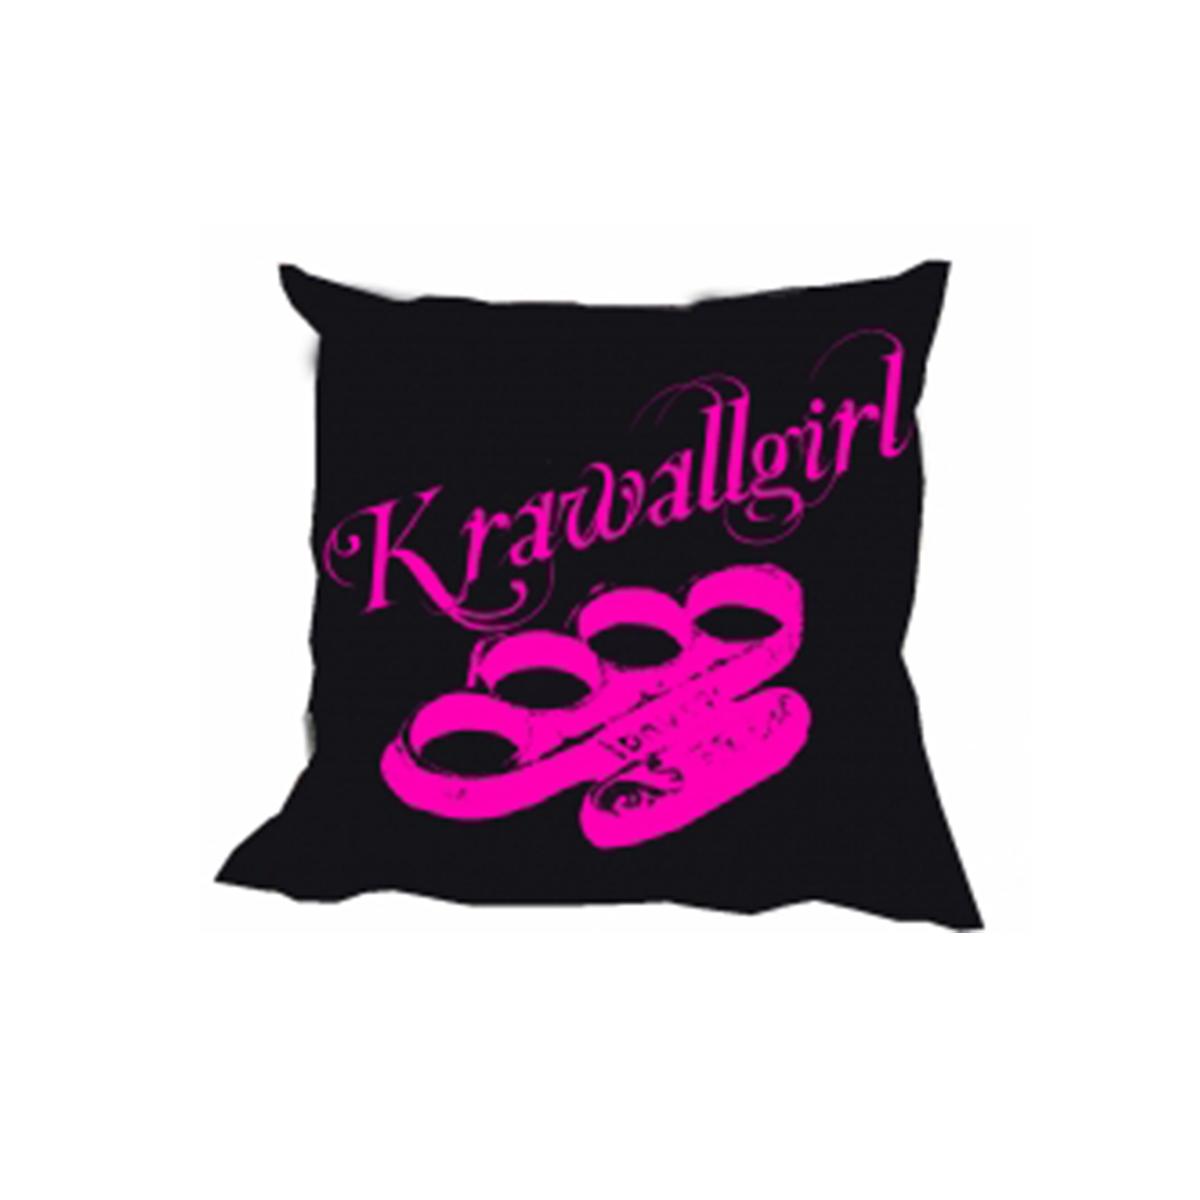 Krawallgirl Schlagring - schwarz-pink - Kissen